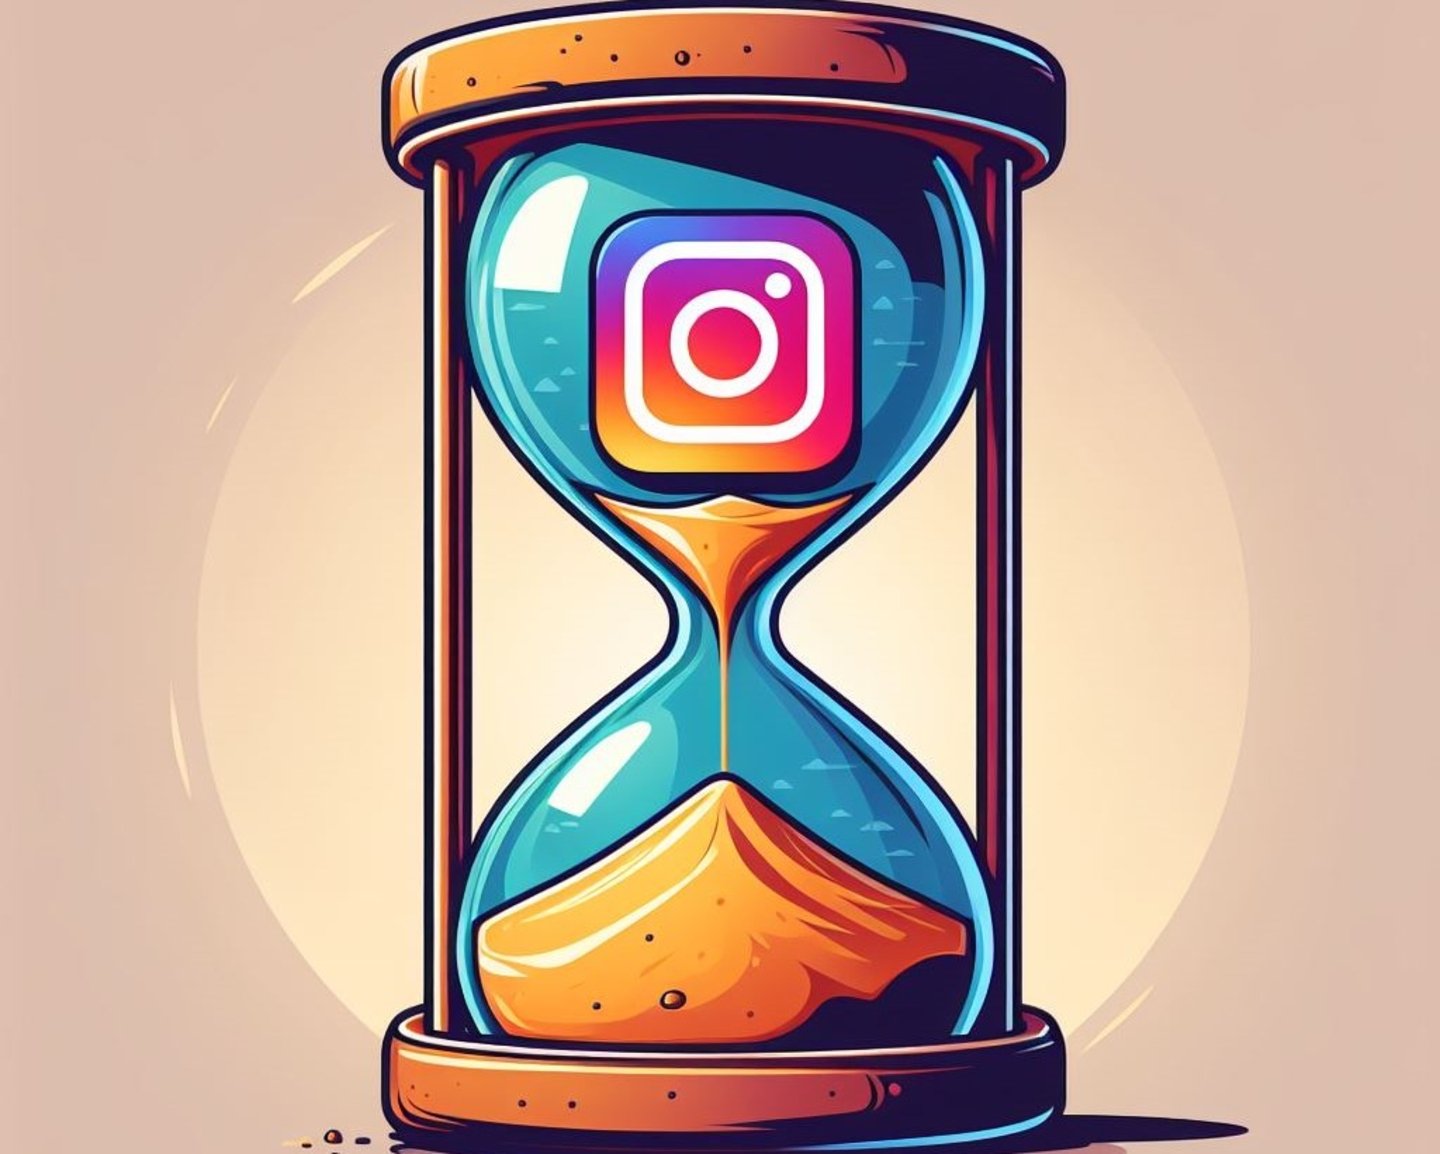 Logotipo de Instagram dentro de un reloj de arena